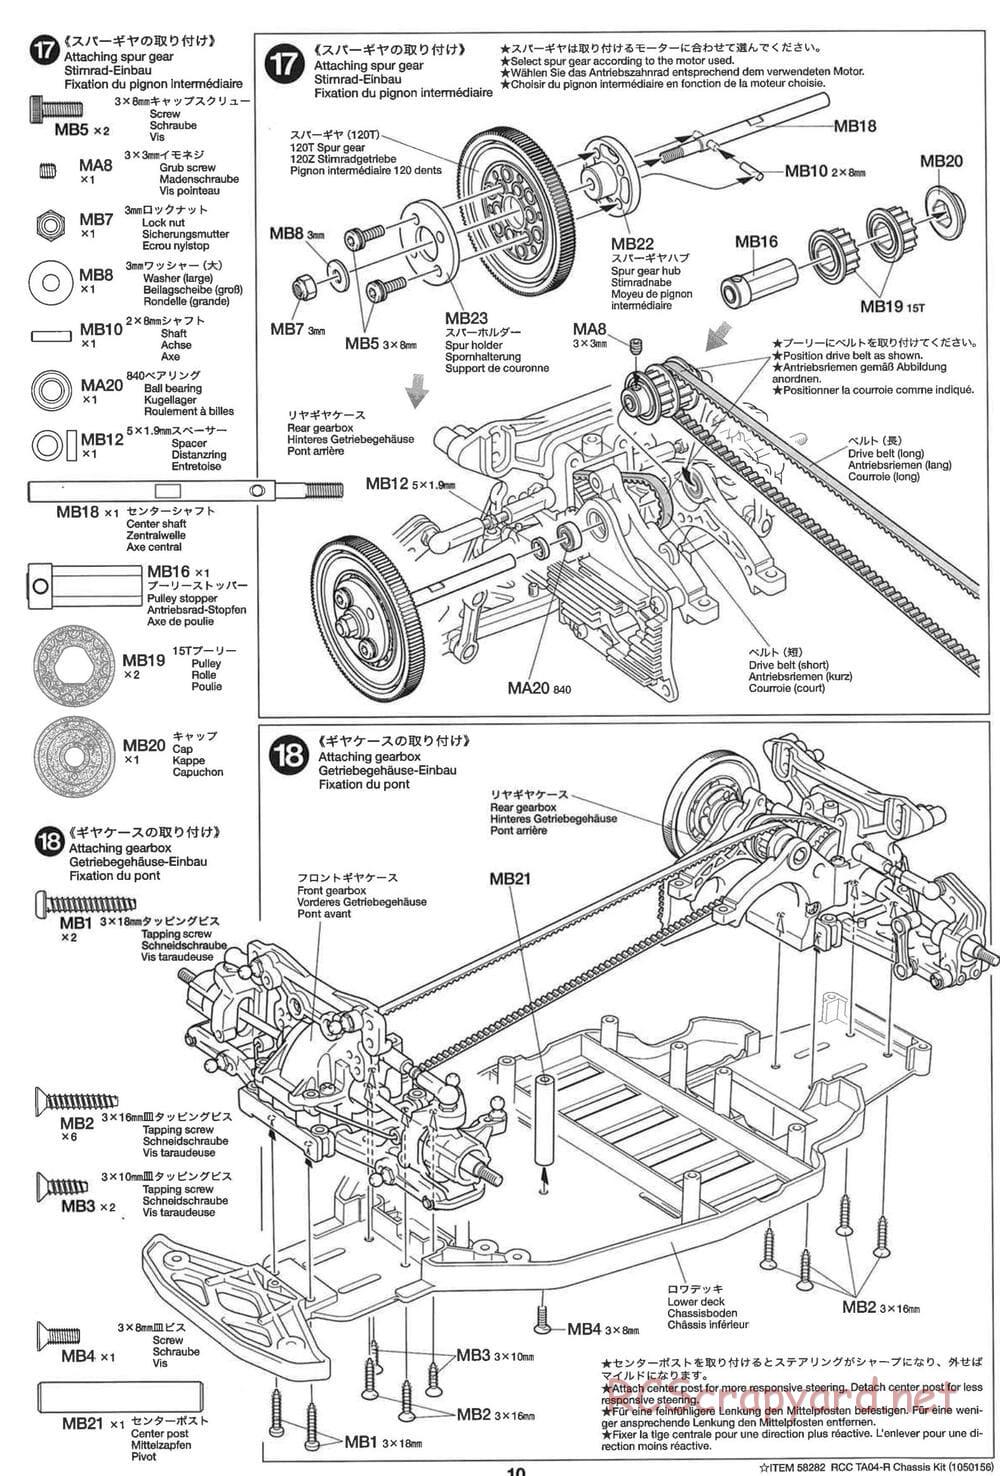 Tamiya - TA-04R Chassis - Manual - Page 10